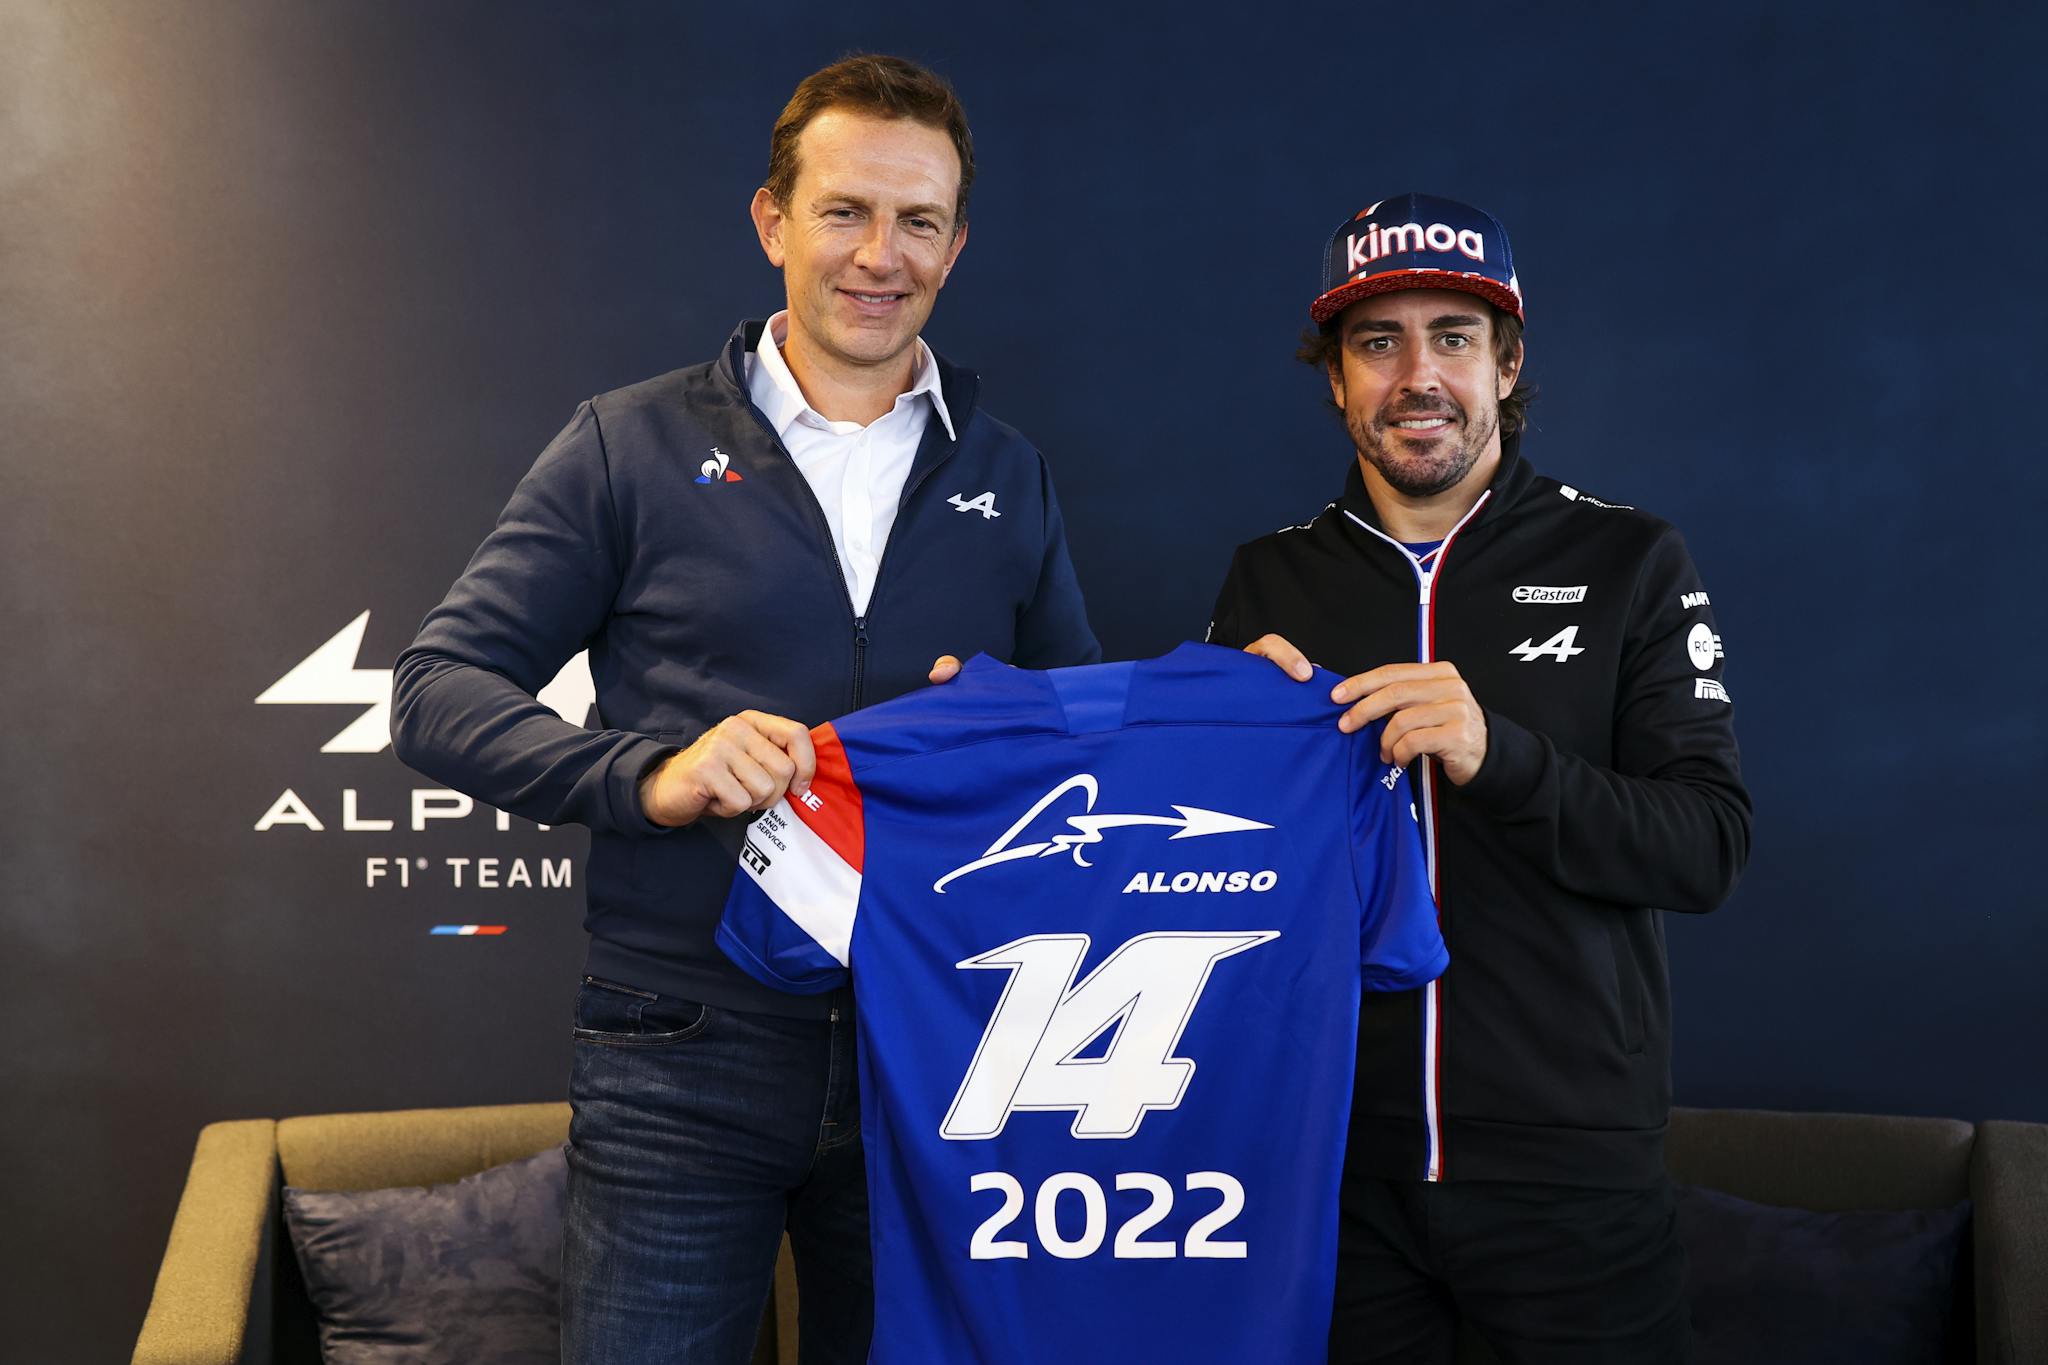 OFICJALNIE: Alonso przedłużył kontrakt z Alpine    